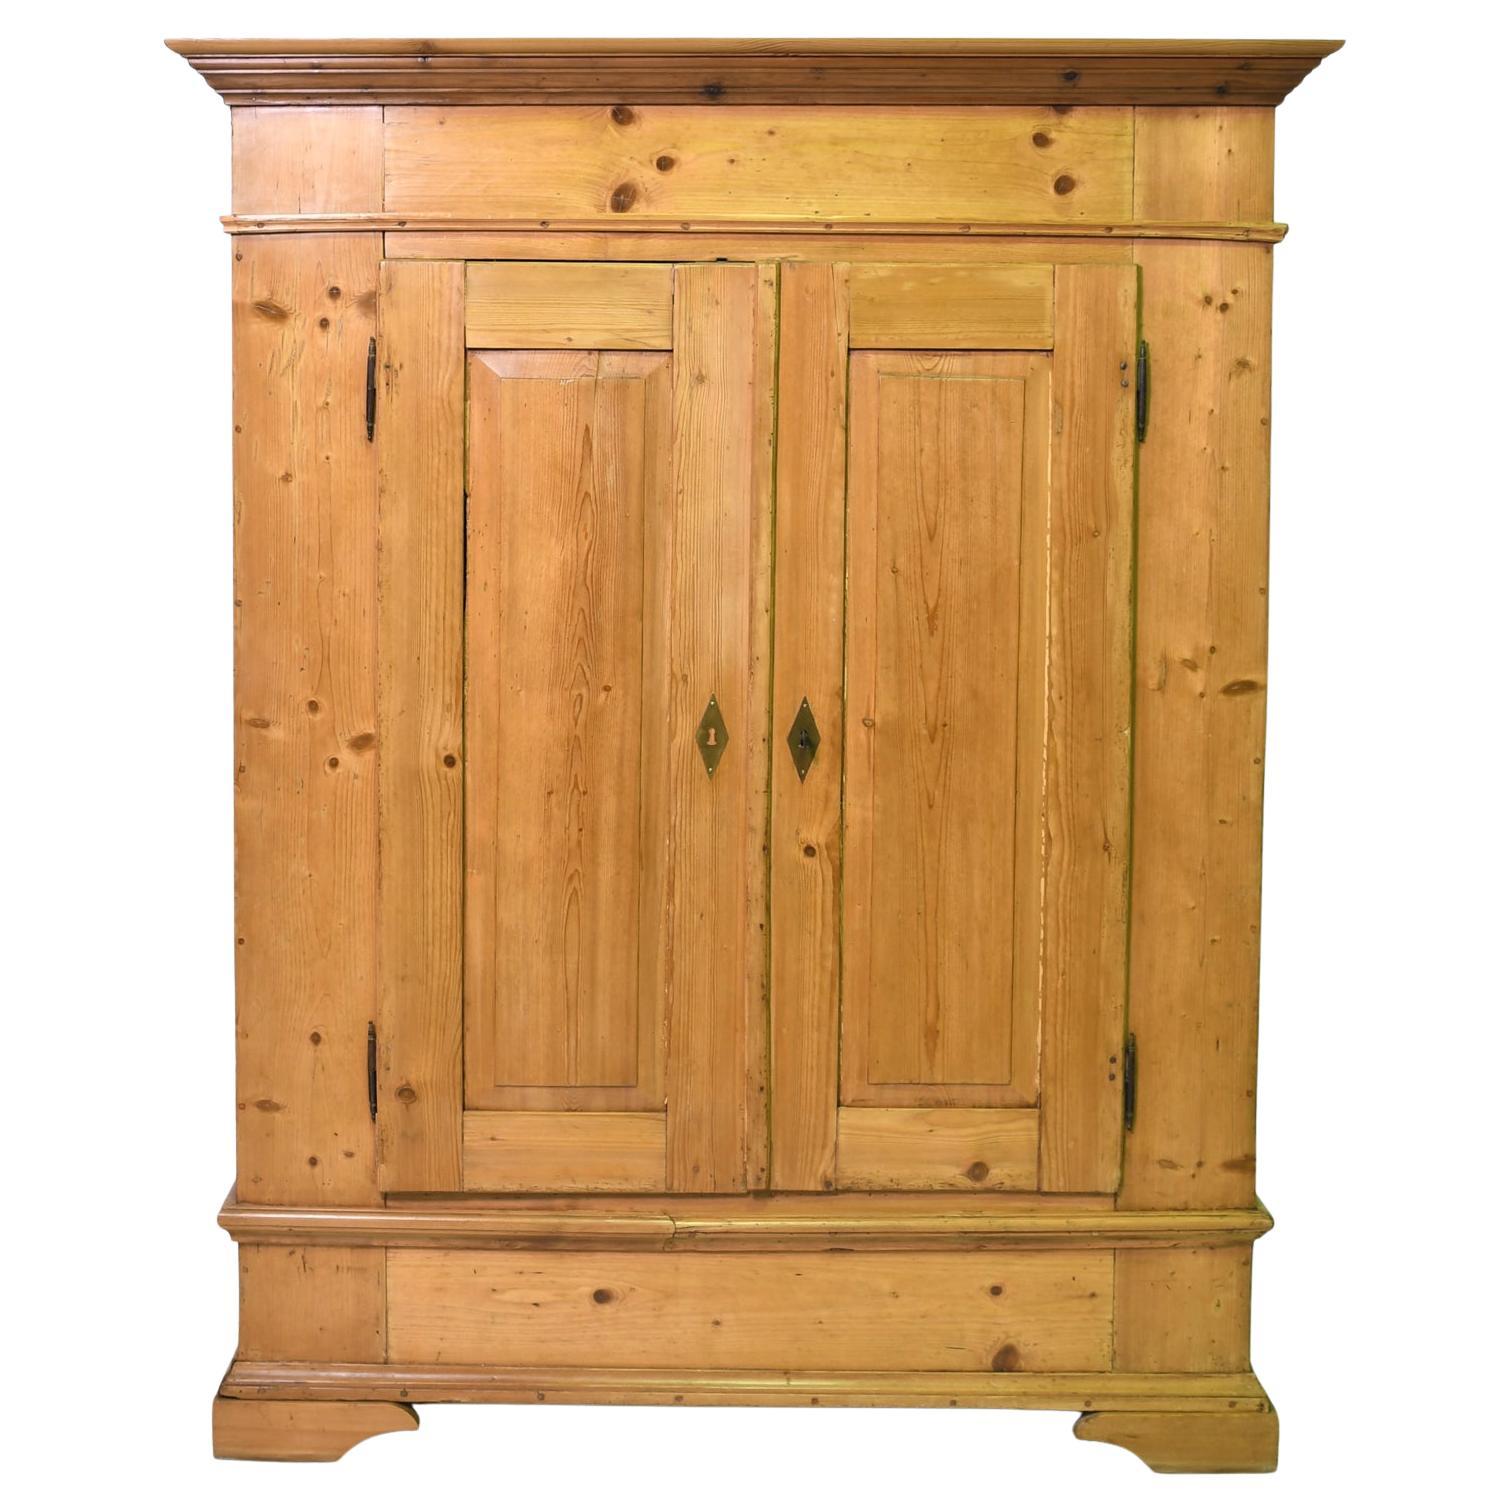 Antique European Pine Armoire with Interior Adjustable Shelves, circa 1850